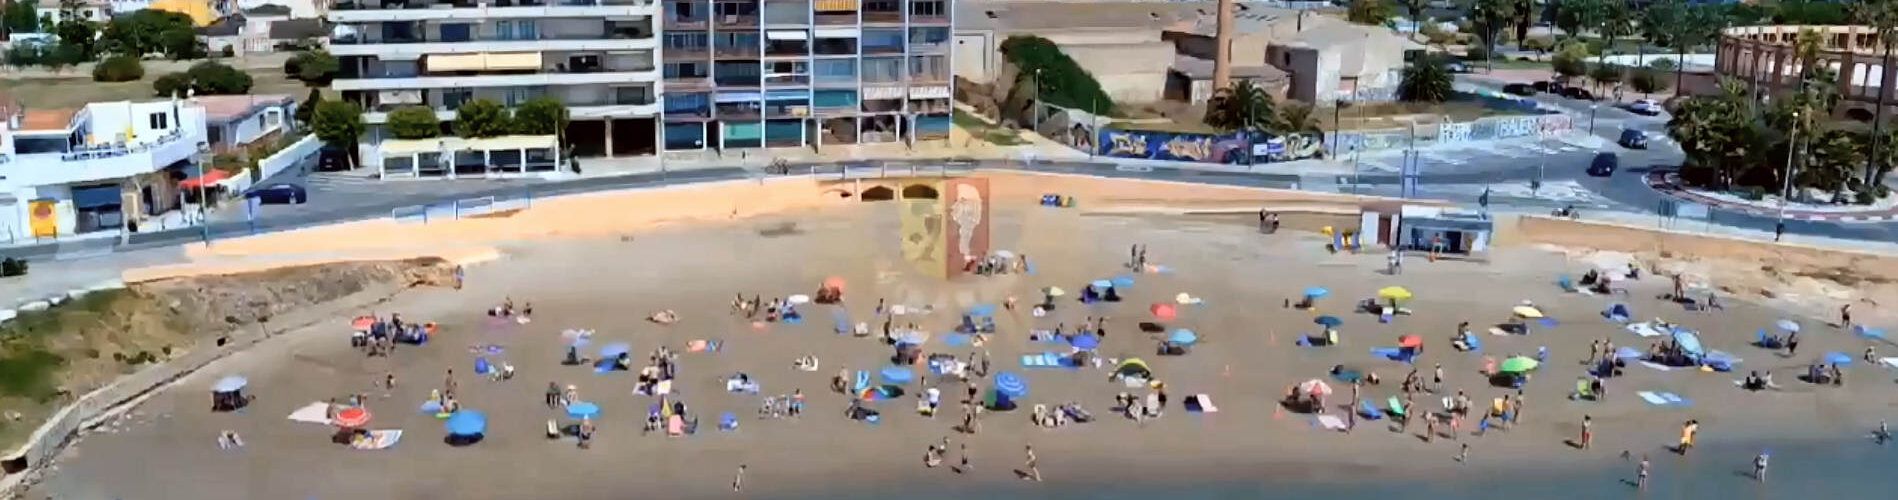 Policia local Vinaròs: detingut per diversos delictes i vols preventius a les platges